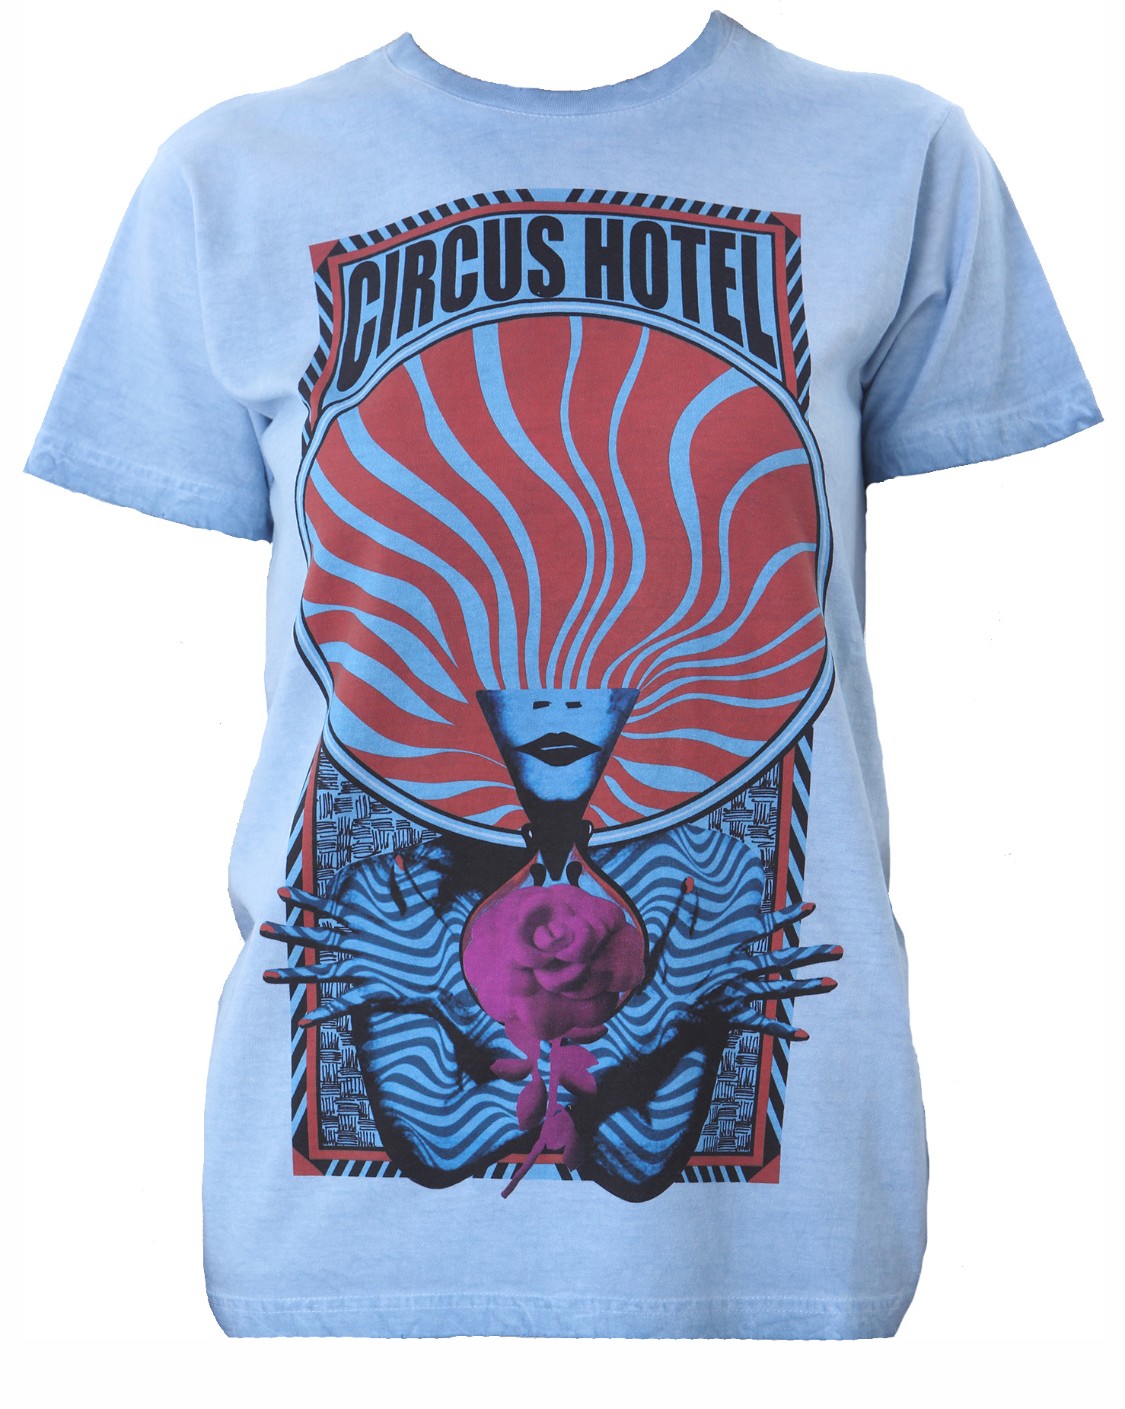 shop Circus Hotel Saldi T-shirts: T-shirts Circus Hotel, manica corta, girocollo, scritta sul davanti stampata.

Composizione: 100% cotone. number 2151